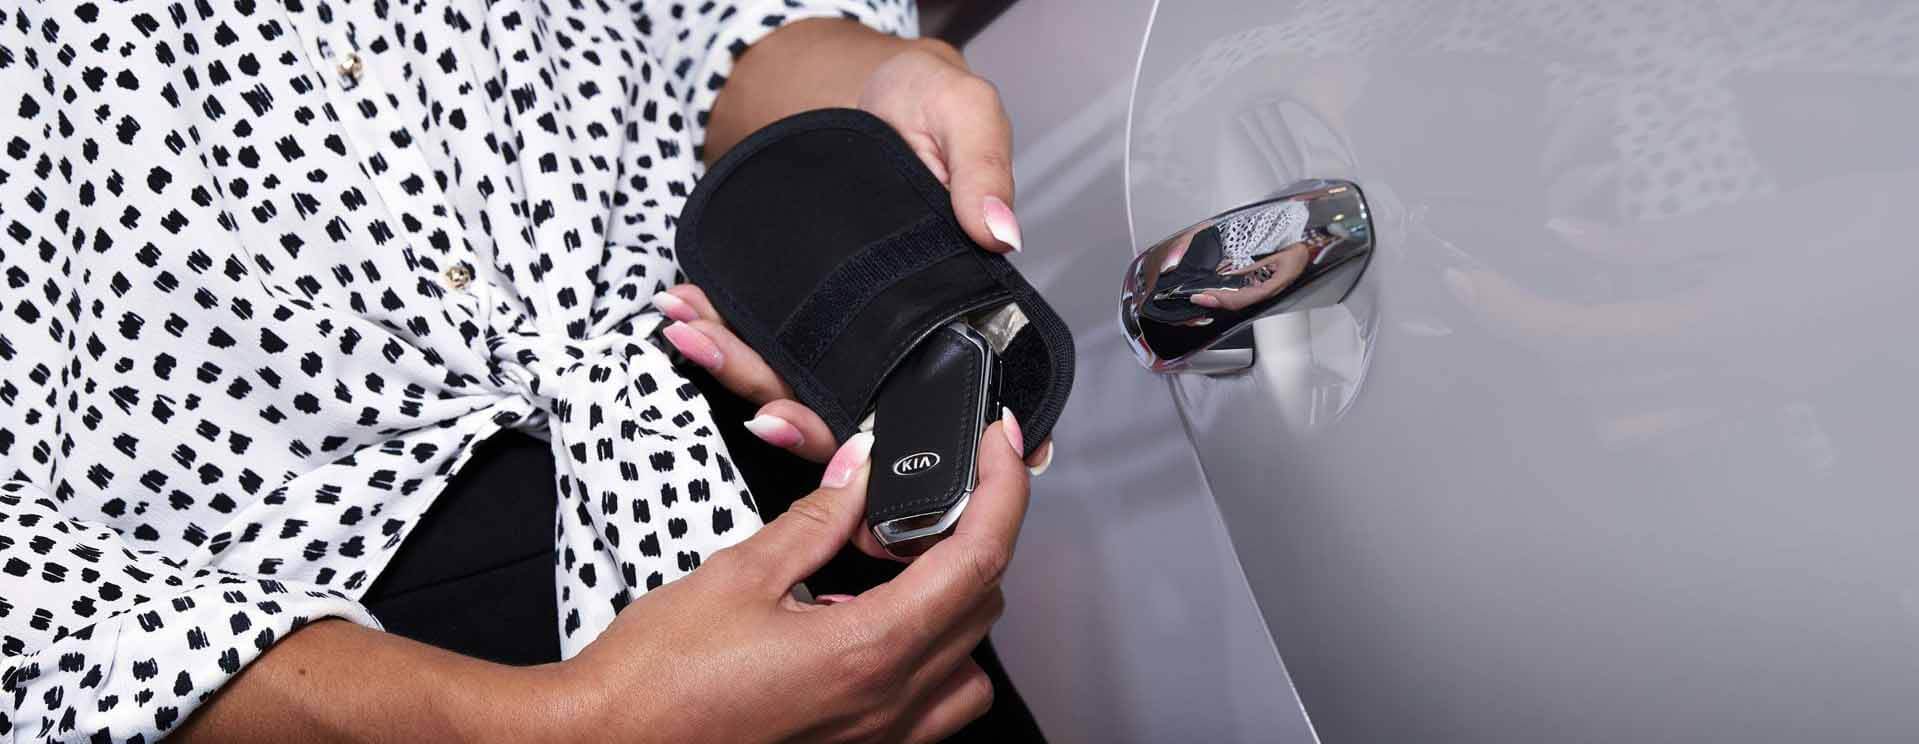 Clés de voiture Keyless Go Protection RFID Voiture Clé Sac Bloquants Housse Noir 